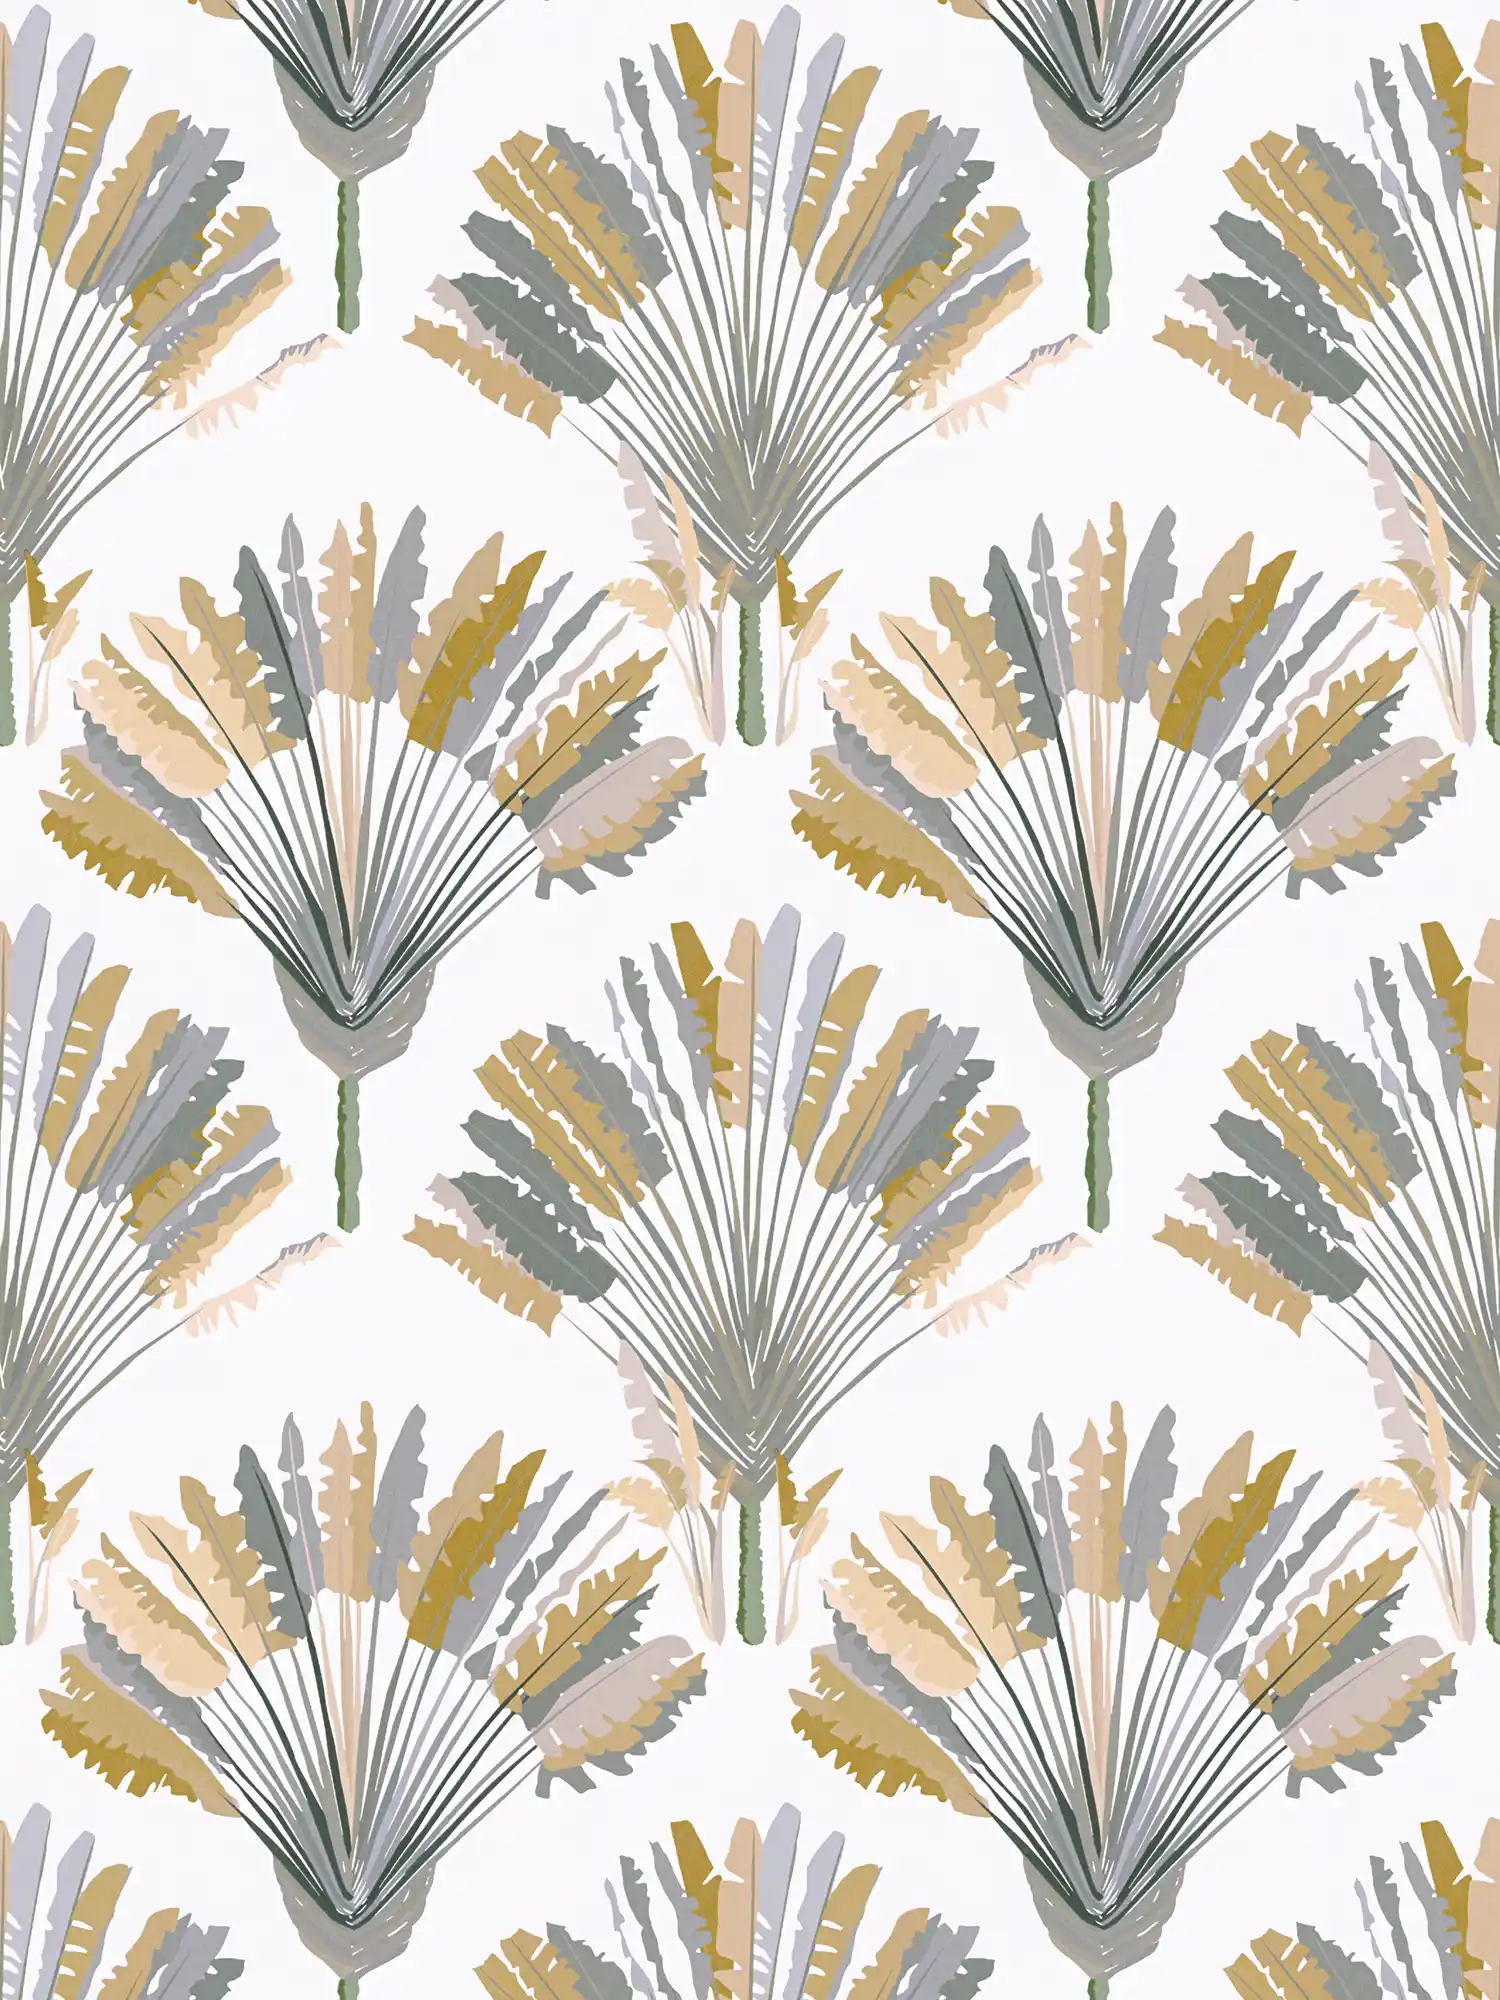 Palmboom behang met patroonprint in moderne stijl - geel, grijs, wit
